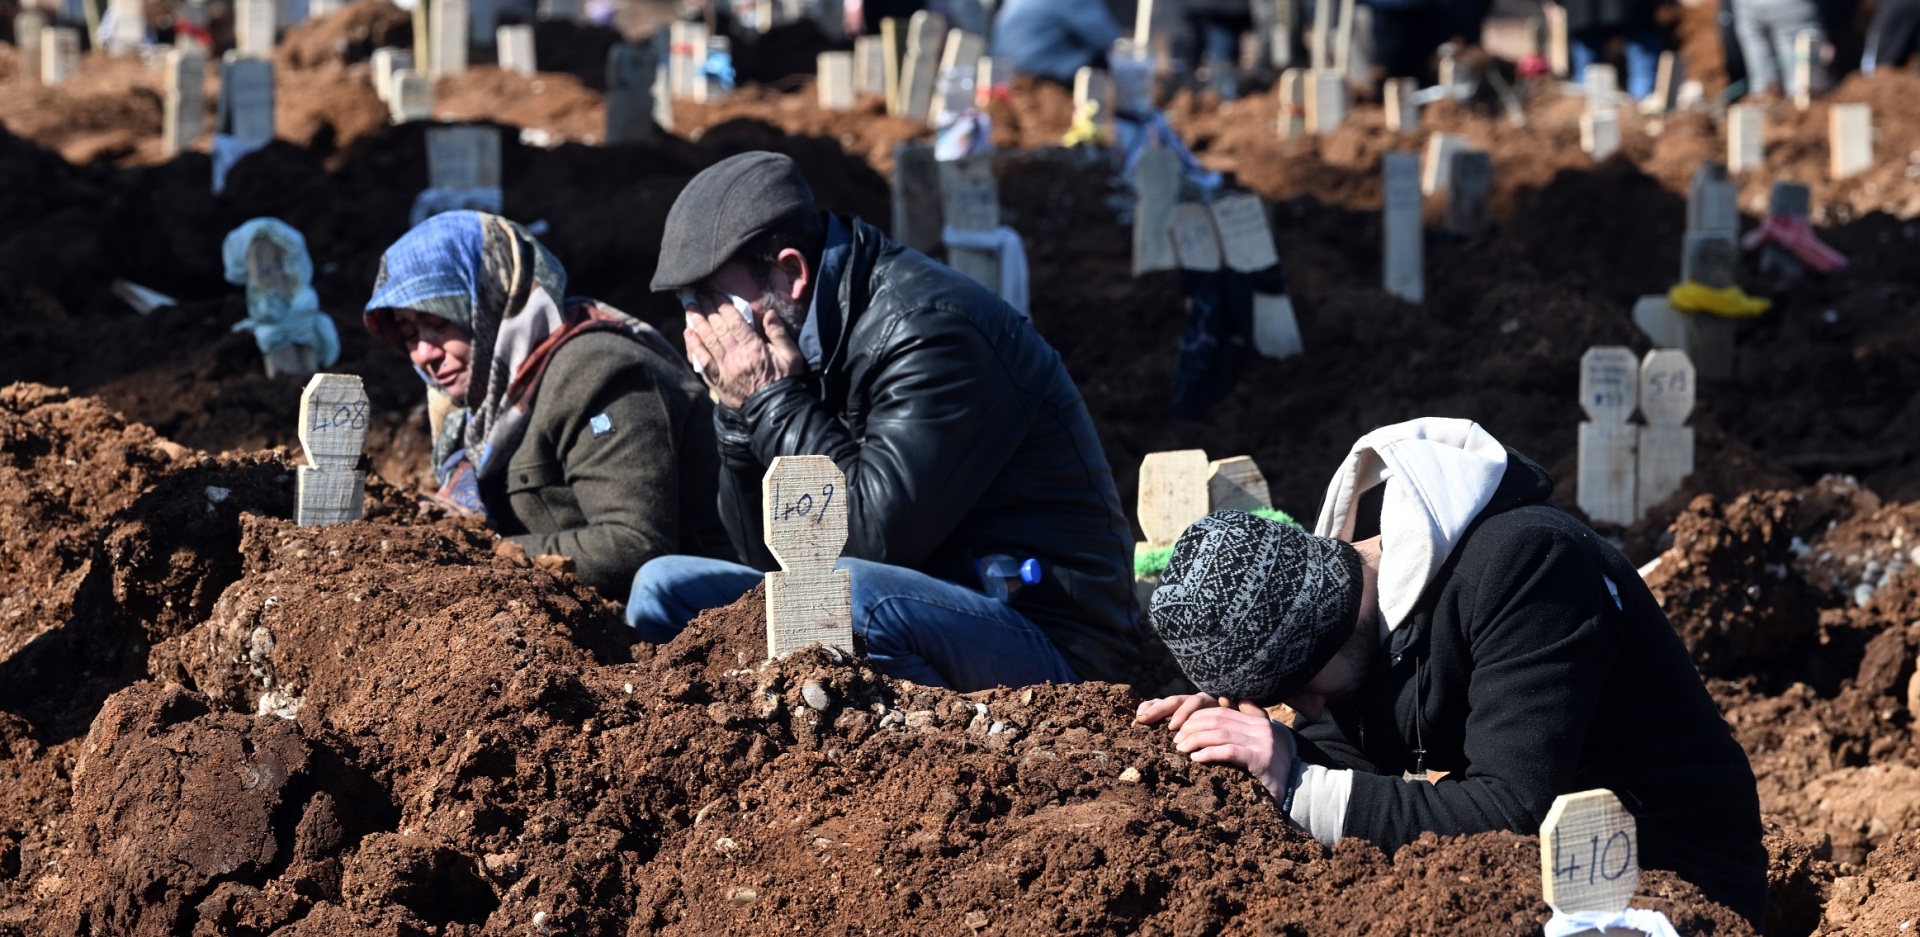 Σεισμός Τουρκία - Συρία: Οι νεκροί θάβονται σε ομαδικούς τάφους ενώ σβήνουν οι ελπίδες για την ανεύρεση επιζώντων - Μαρτυρίες από τις πληγείσες περιοχές.